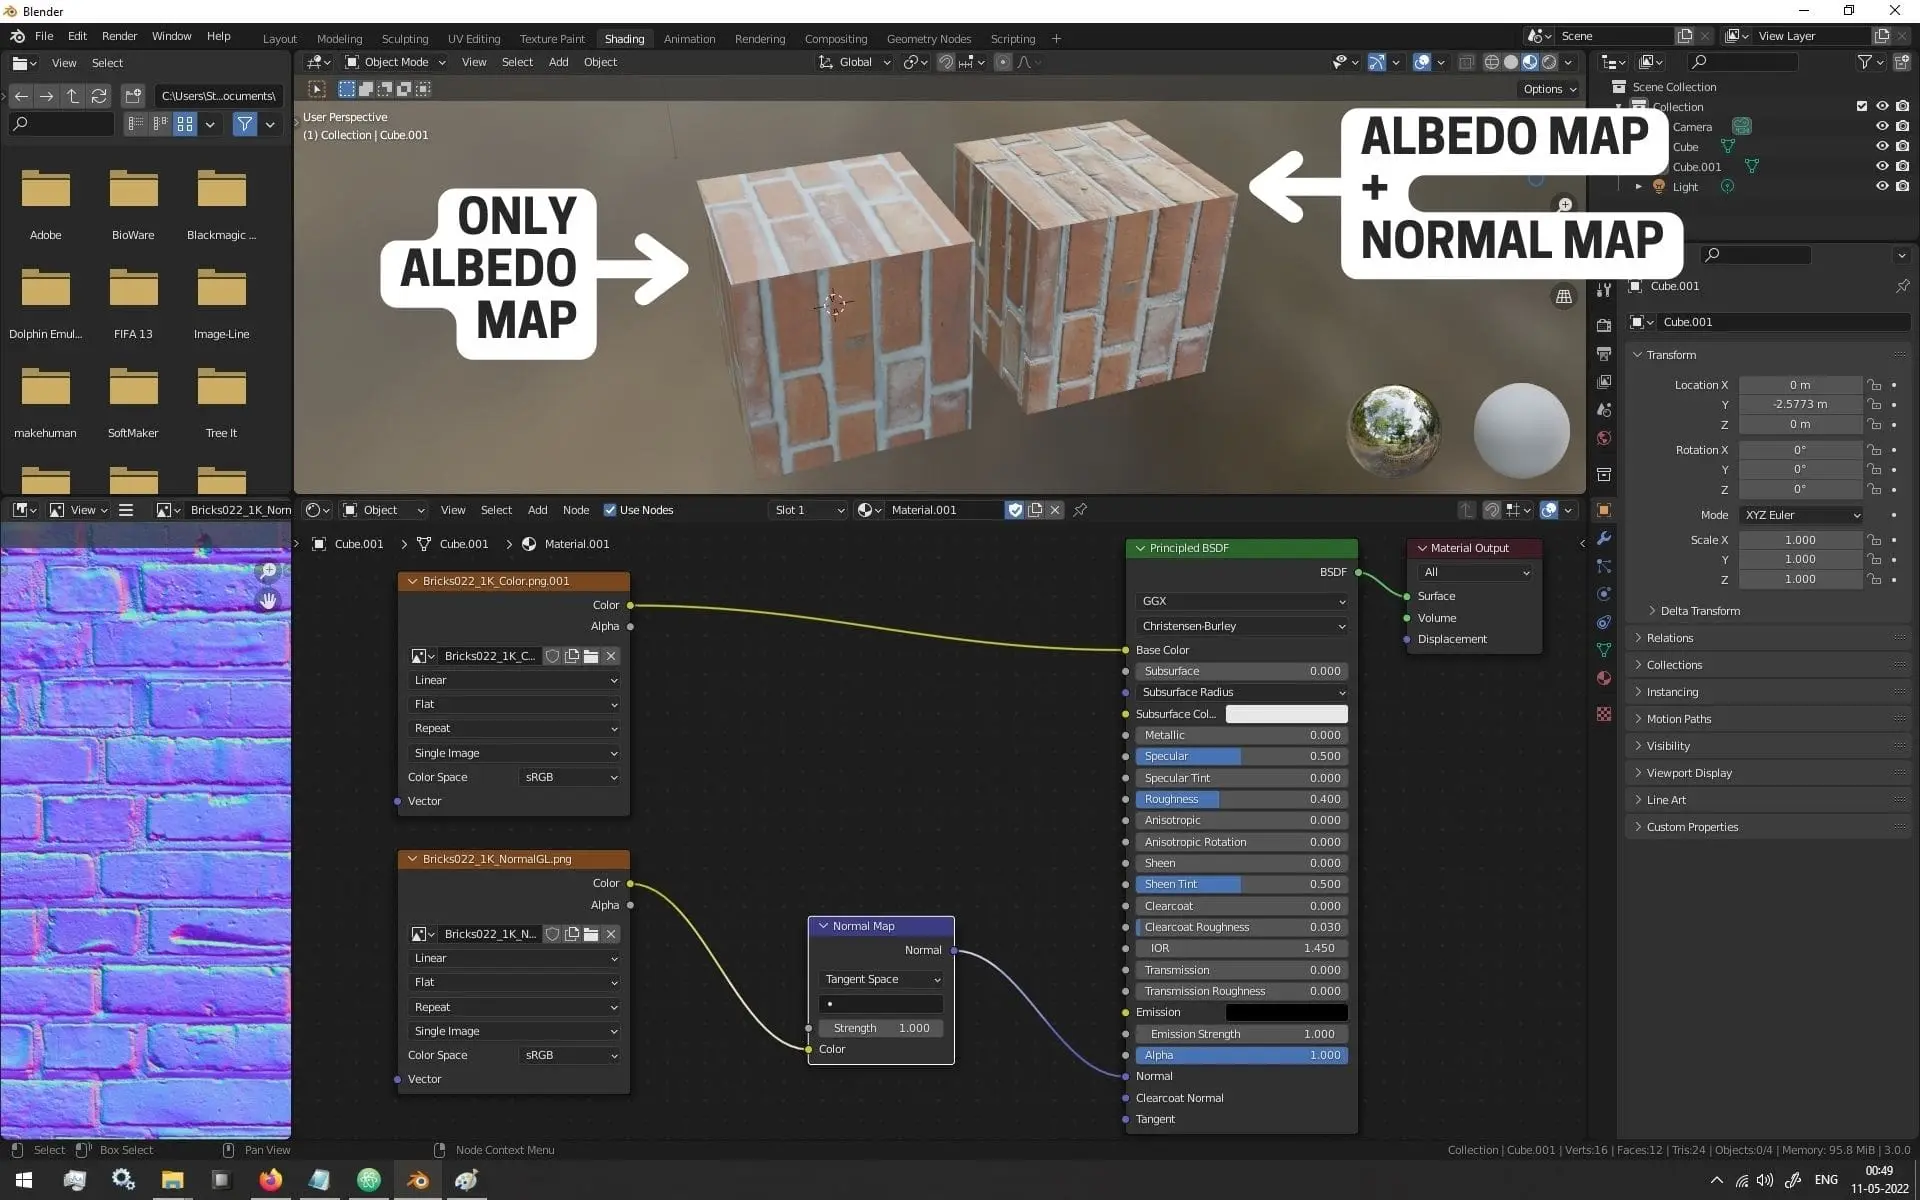 Using Normal Map In Blender - Final Result - CG - Basics Of 3D Art For Game Development Tutorial